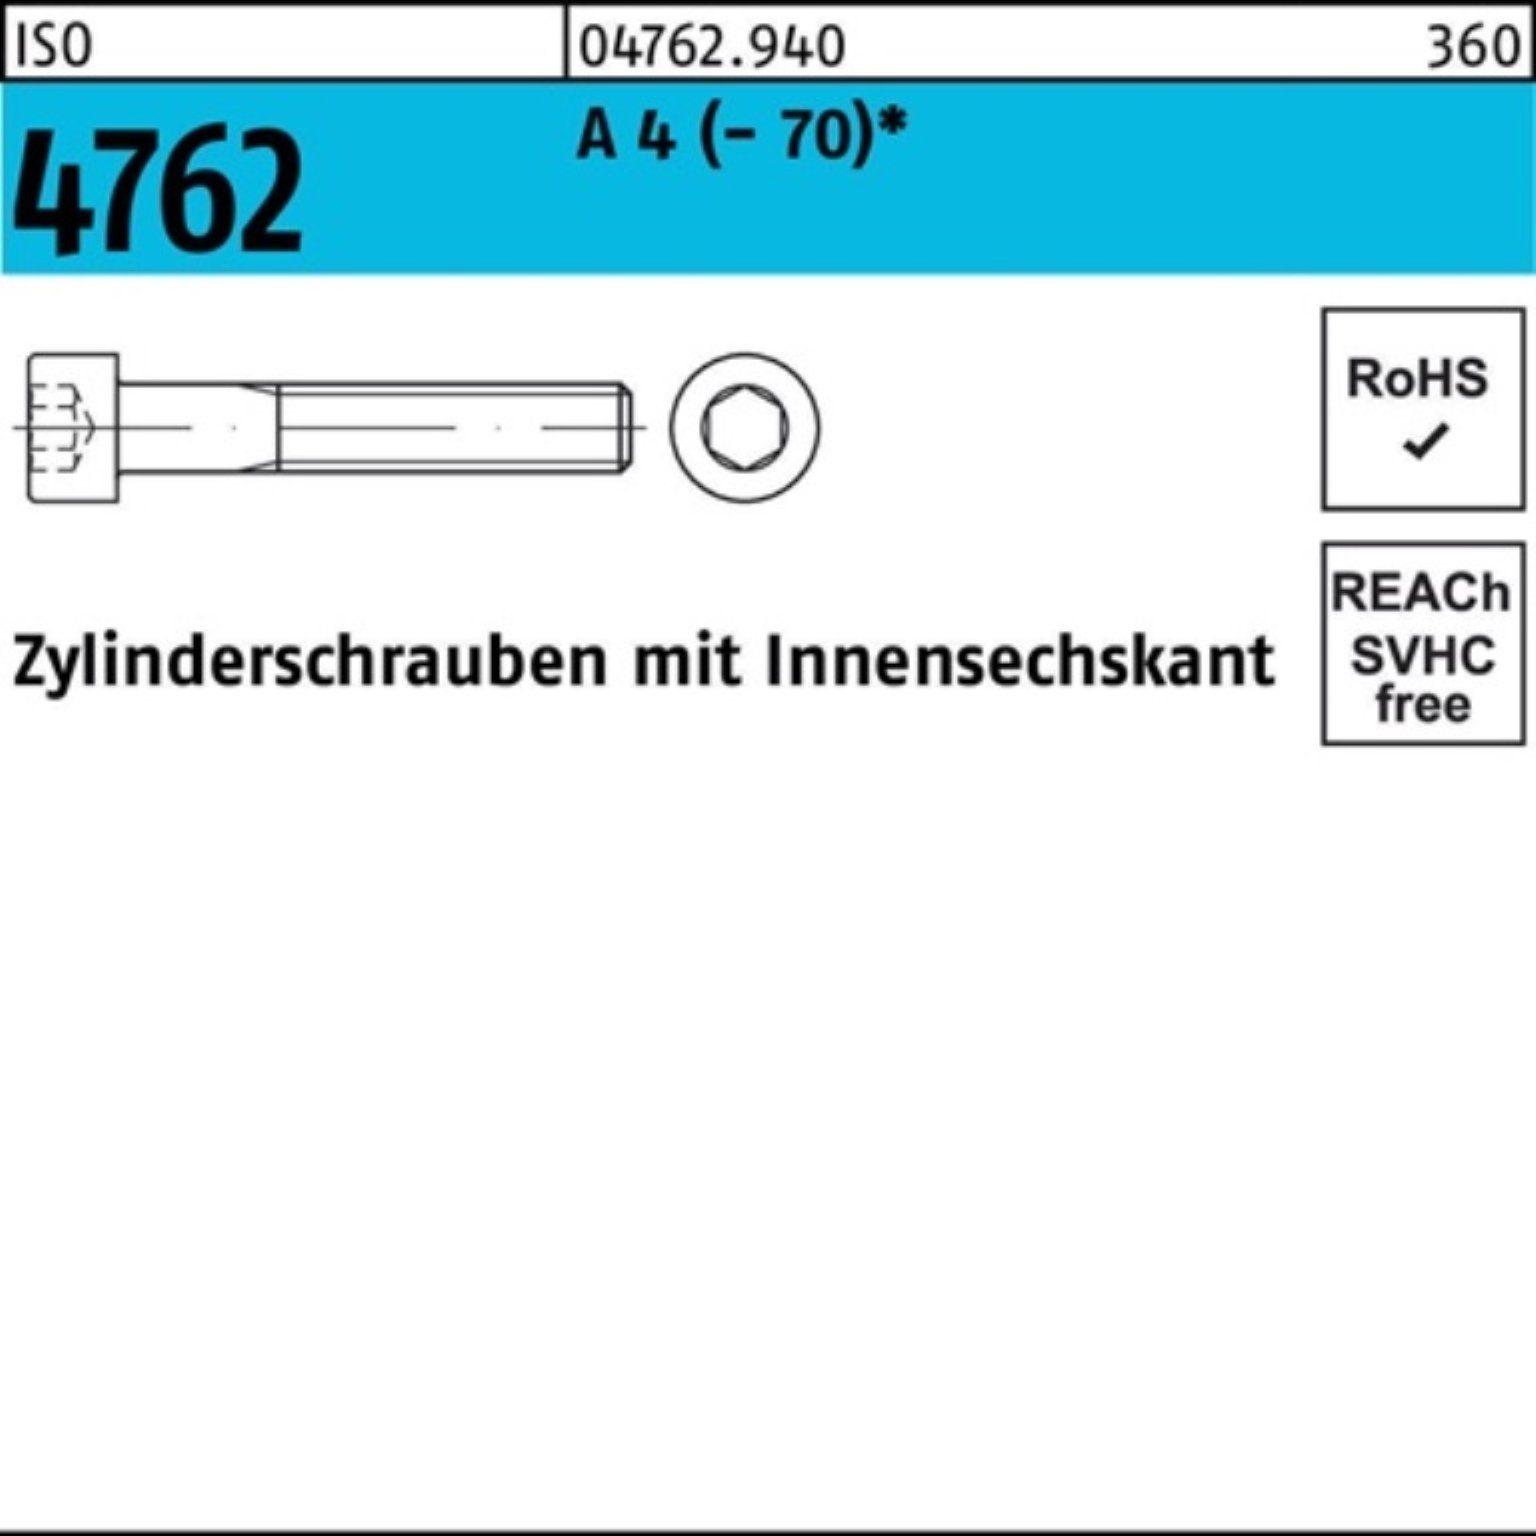 A (70) Innen-6kt S Reyher ISO Zylinderschraube Zylinderschraube 100er 1 Pack 150 4762 4 M14x